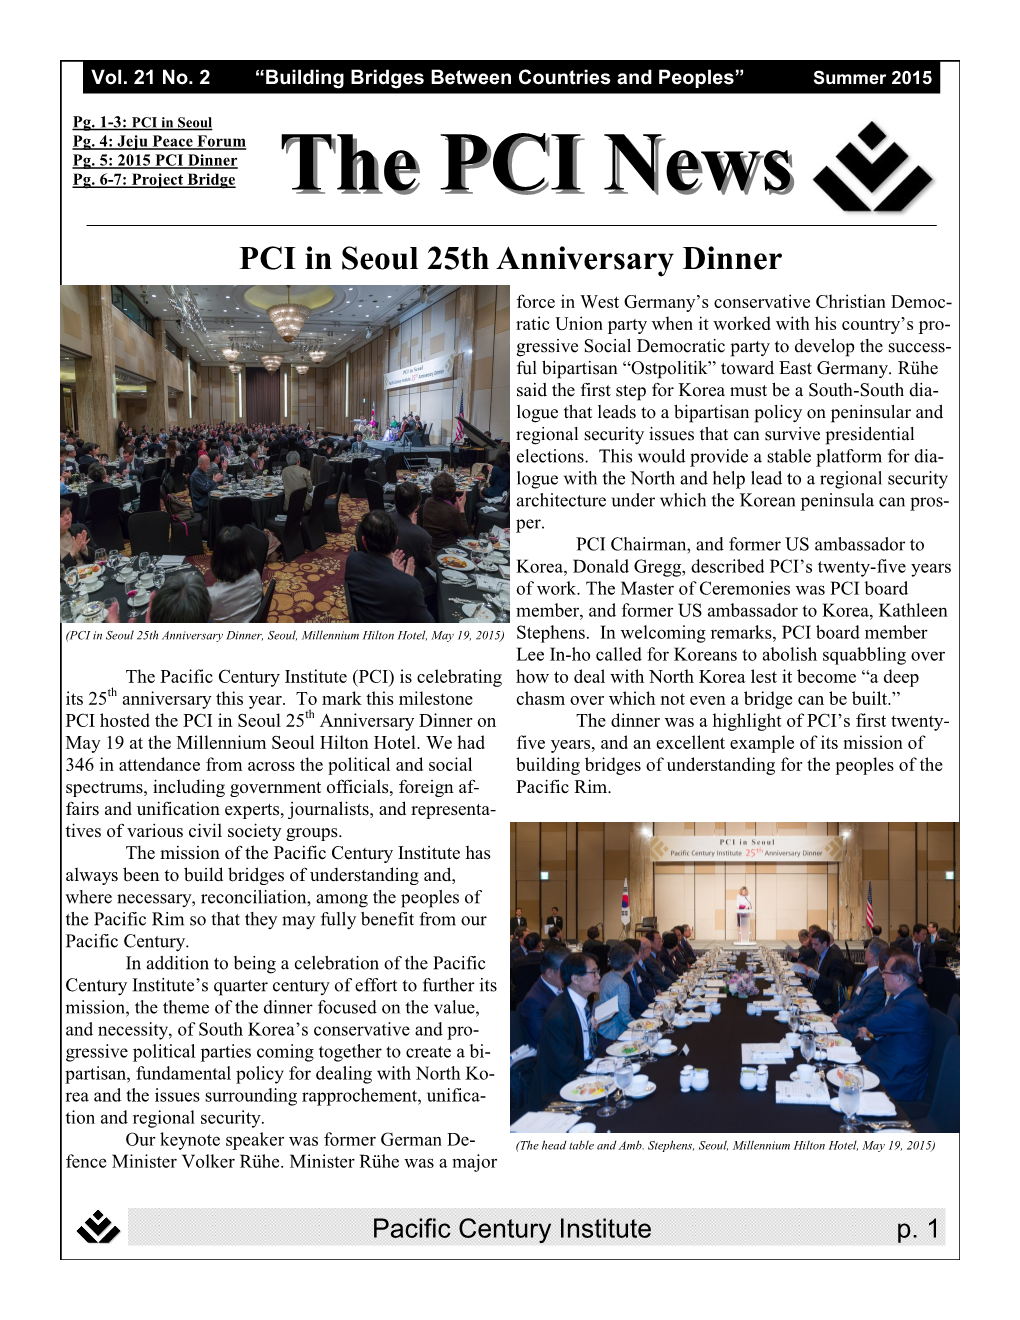 PCI Newsletter Summer